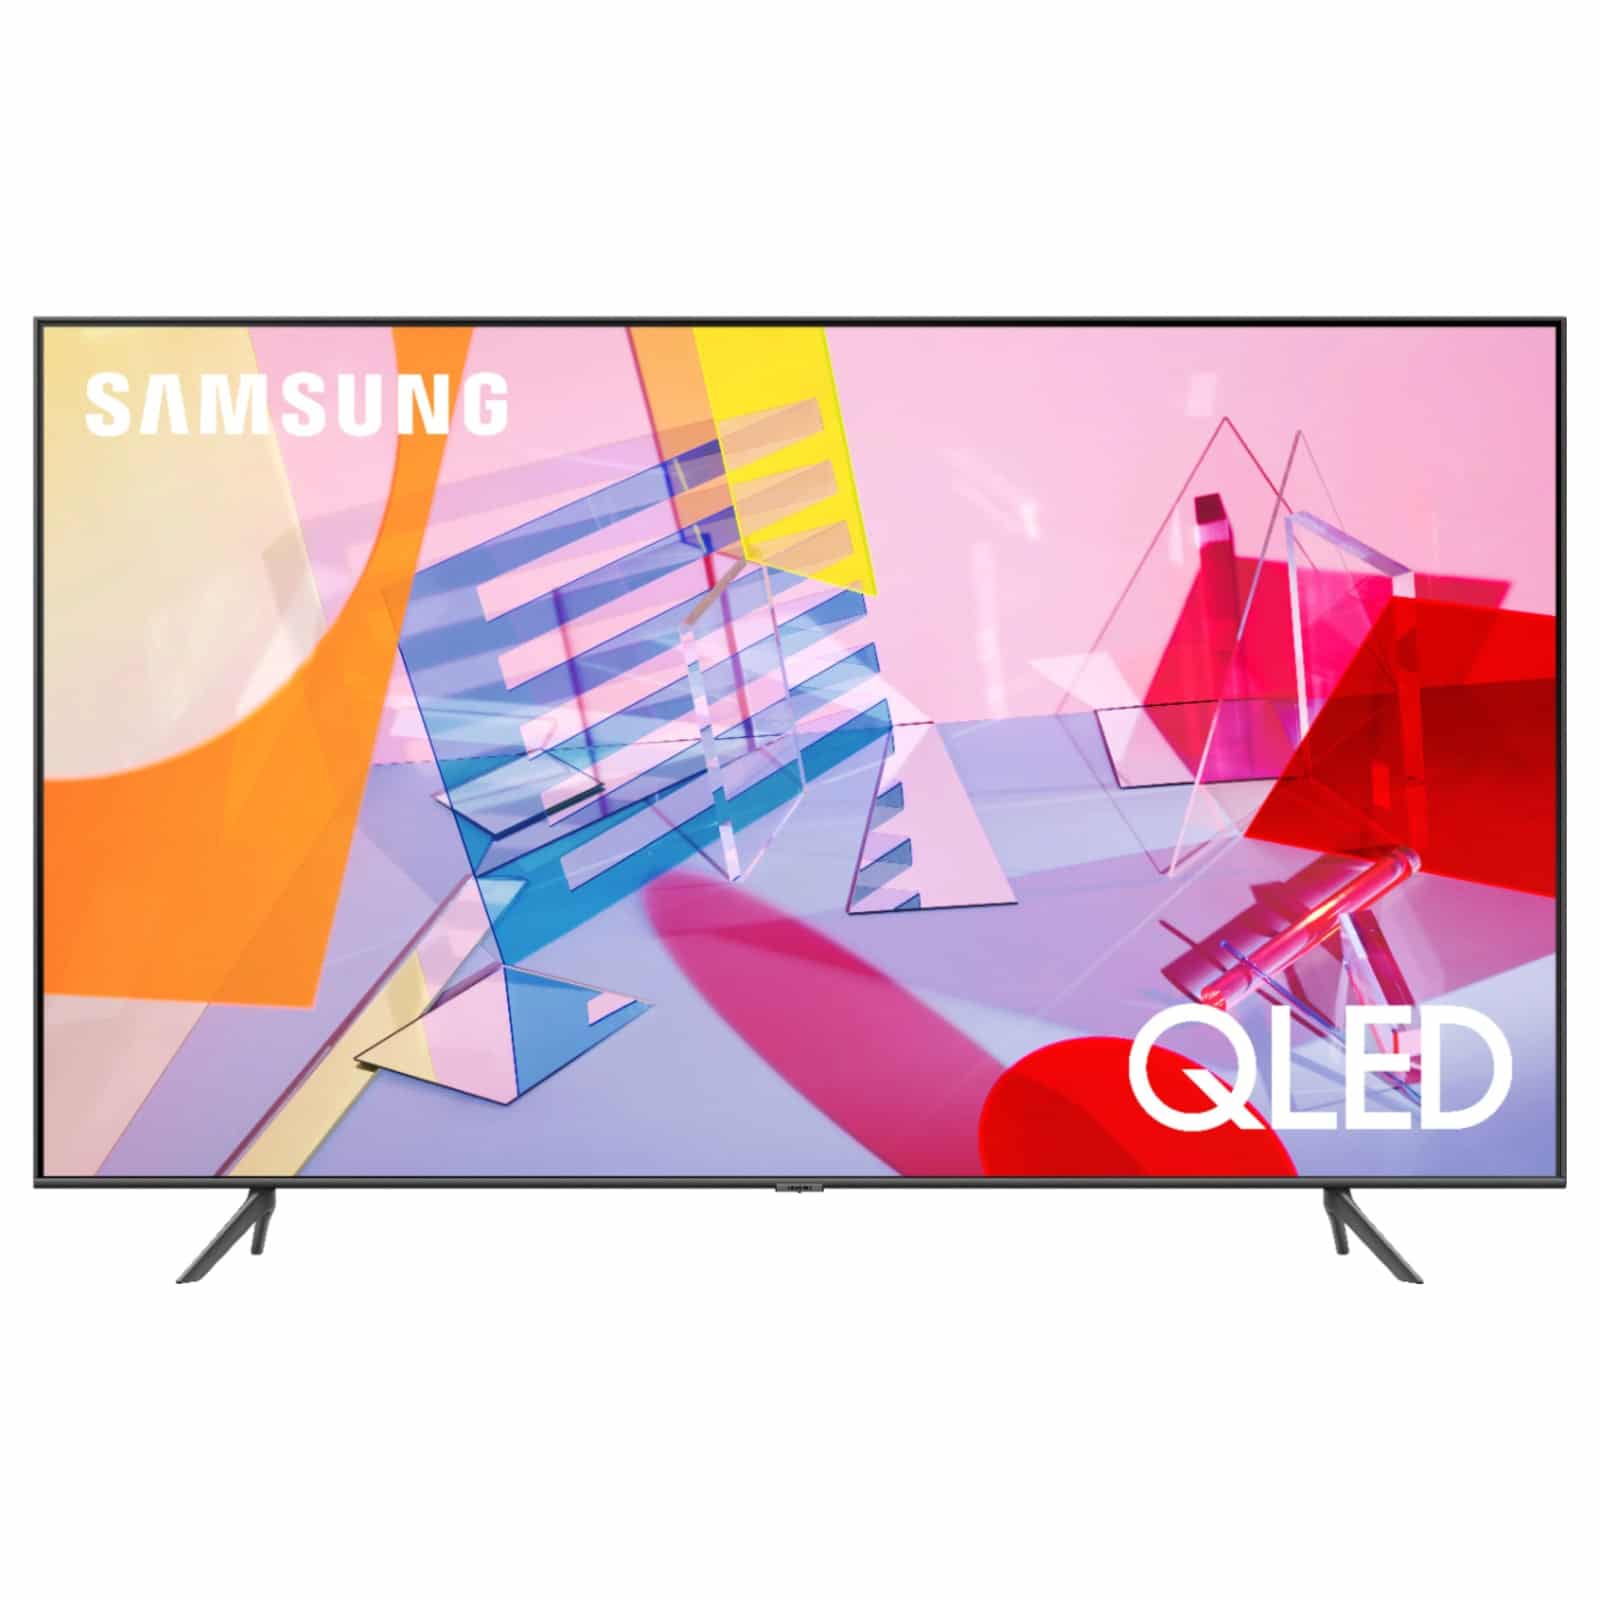 Tv Samsung de 55 pulgadas QLED HDR 4K ultra HD comando de voz smart tv  modelo QN55Q60T Santa Cruz